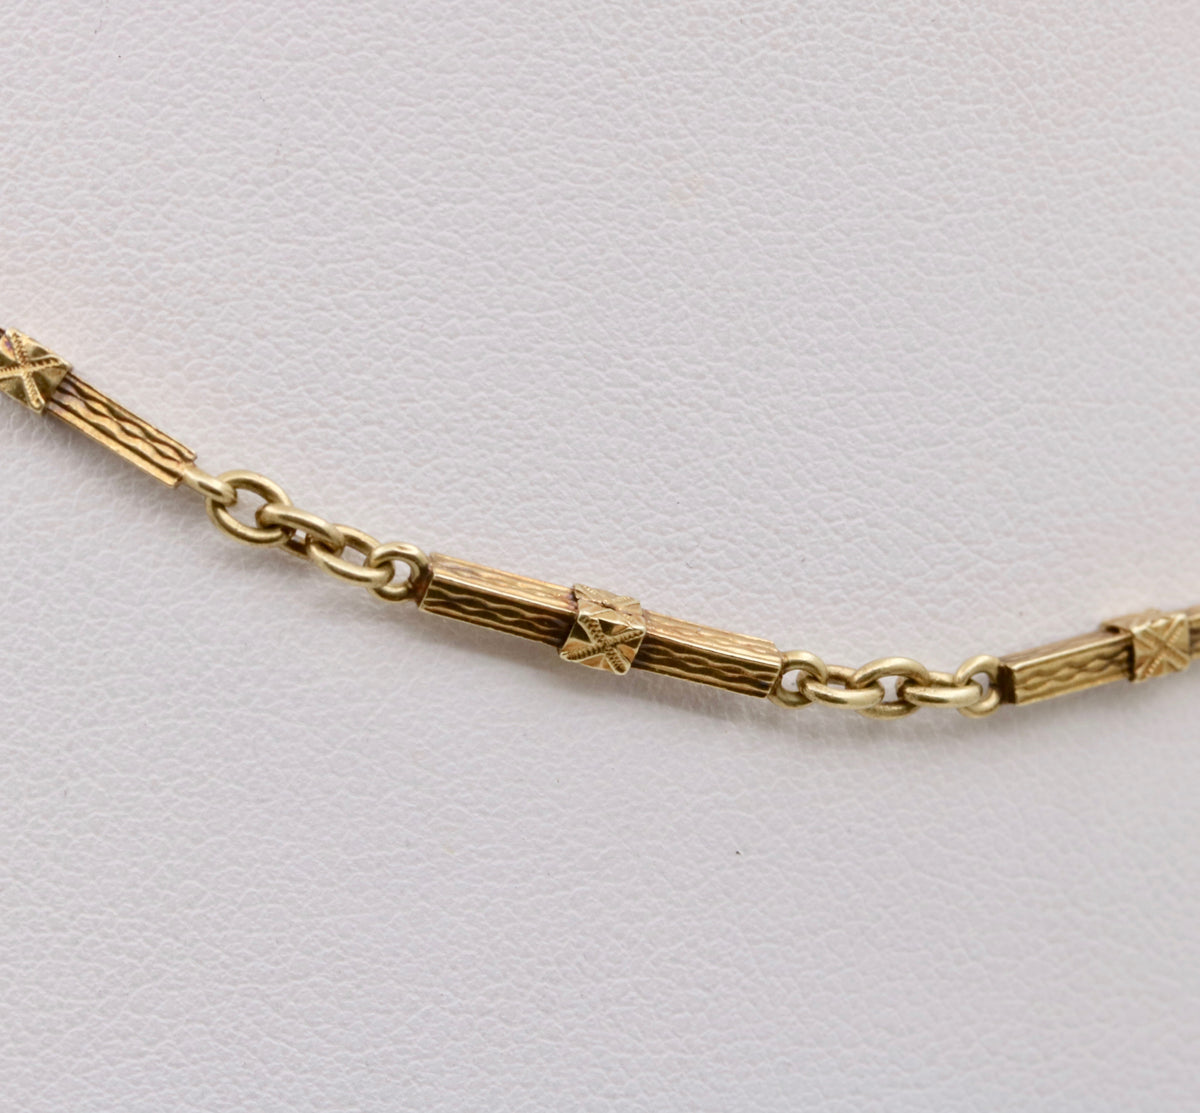 Art Deco 14K Gold Bar Link Watch Chain, 14.6” Long